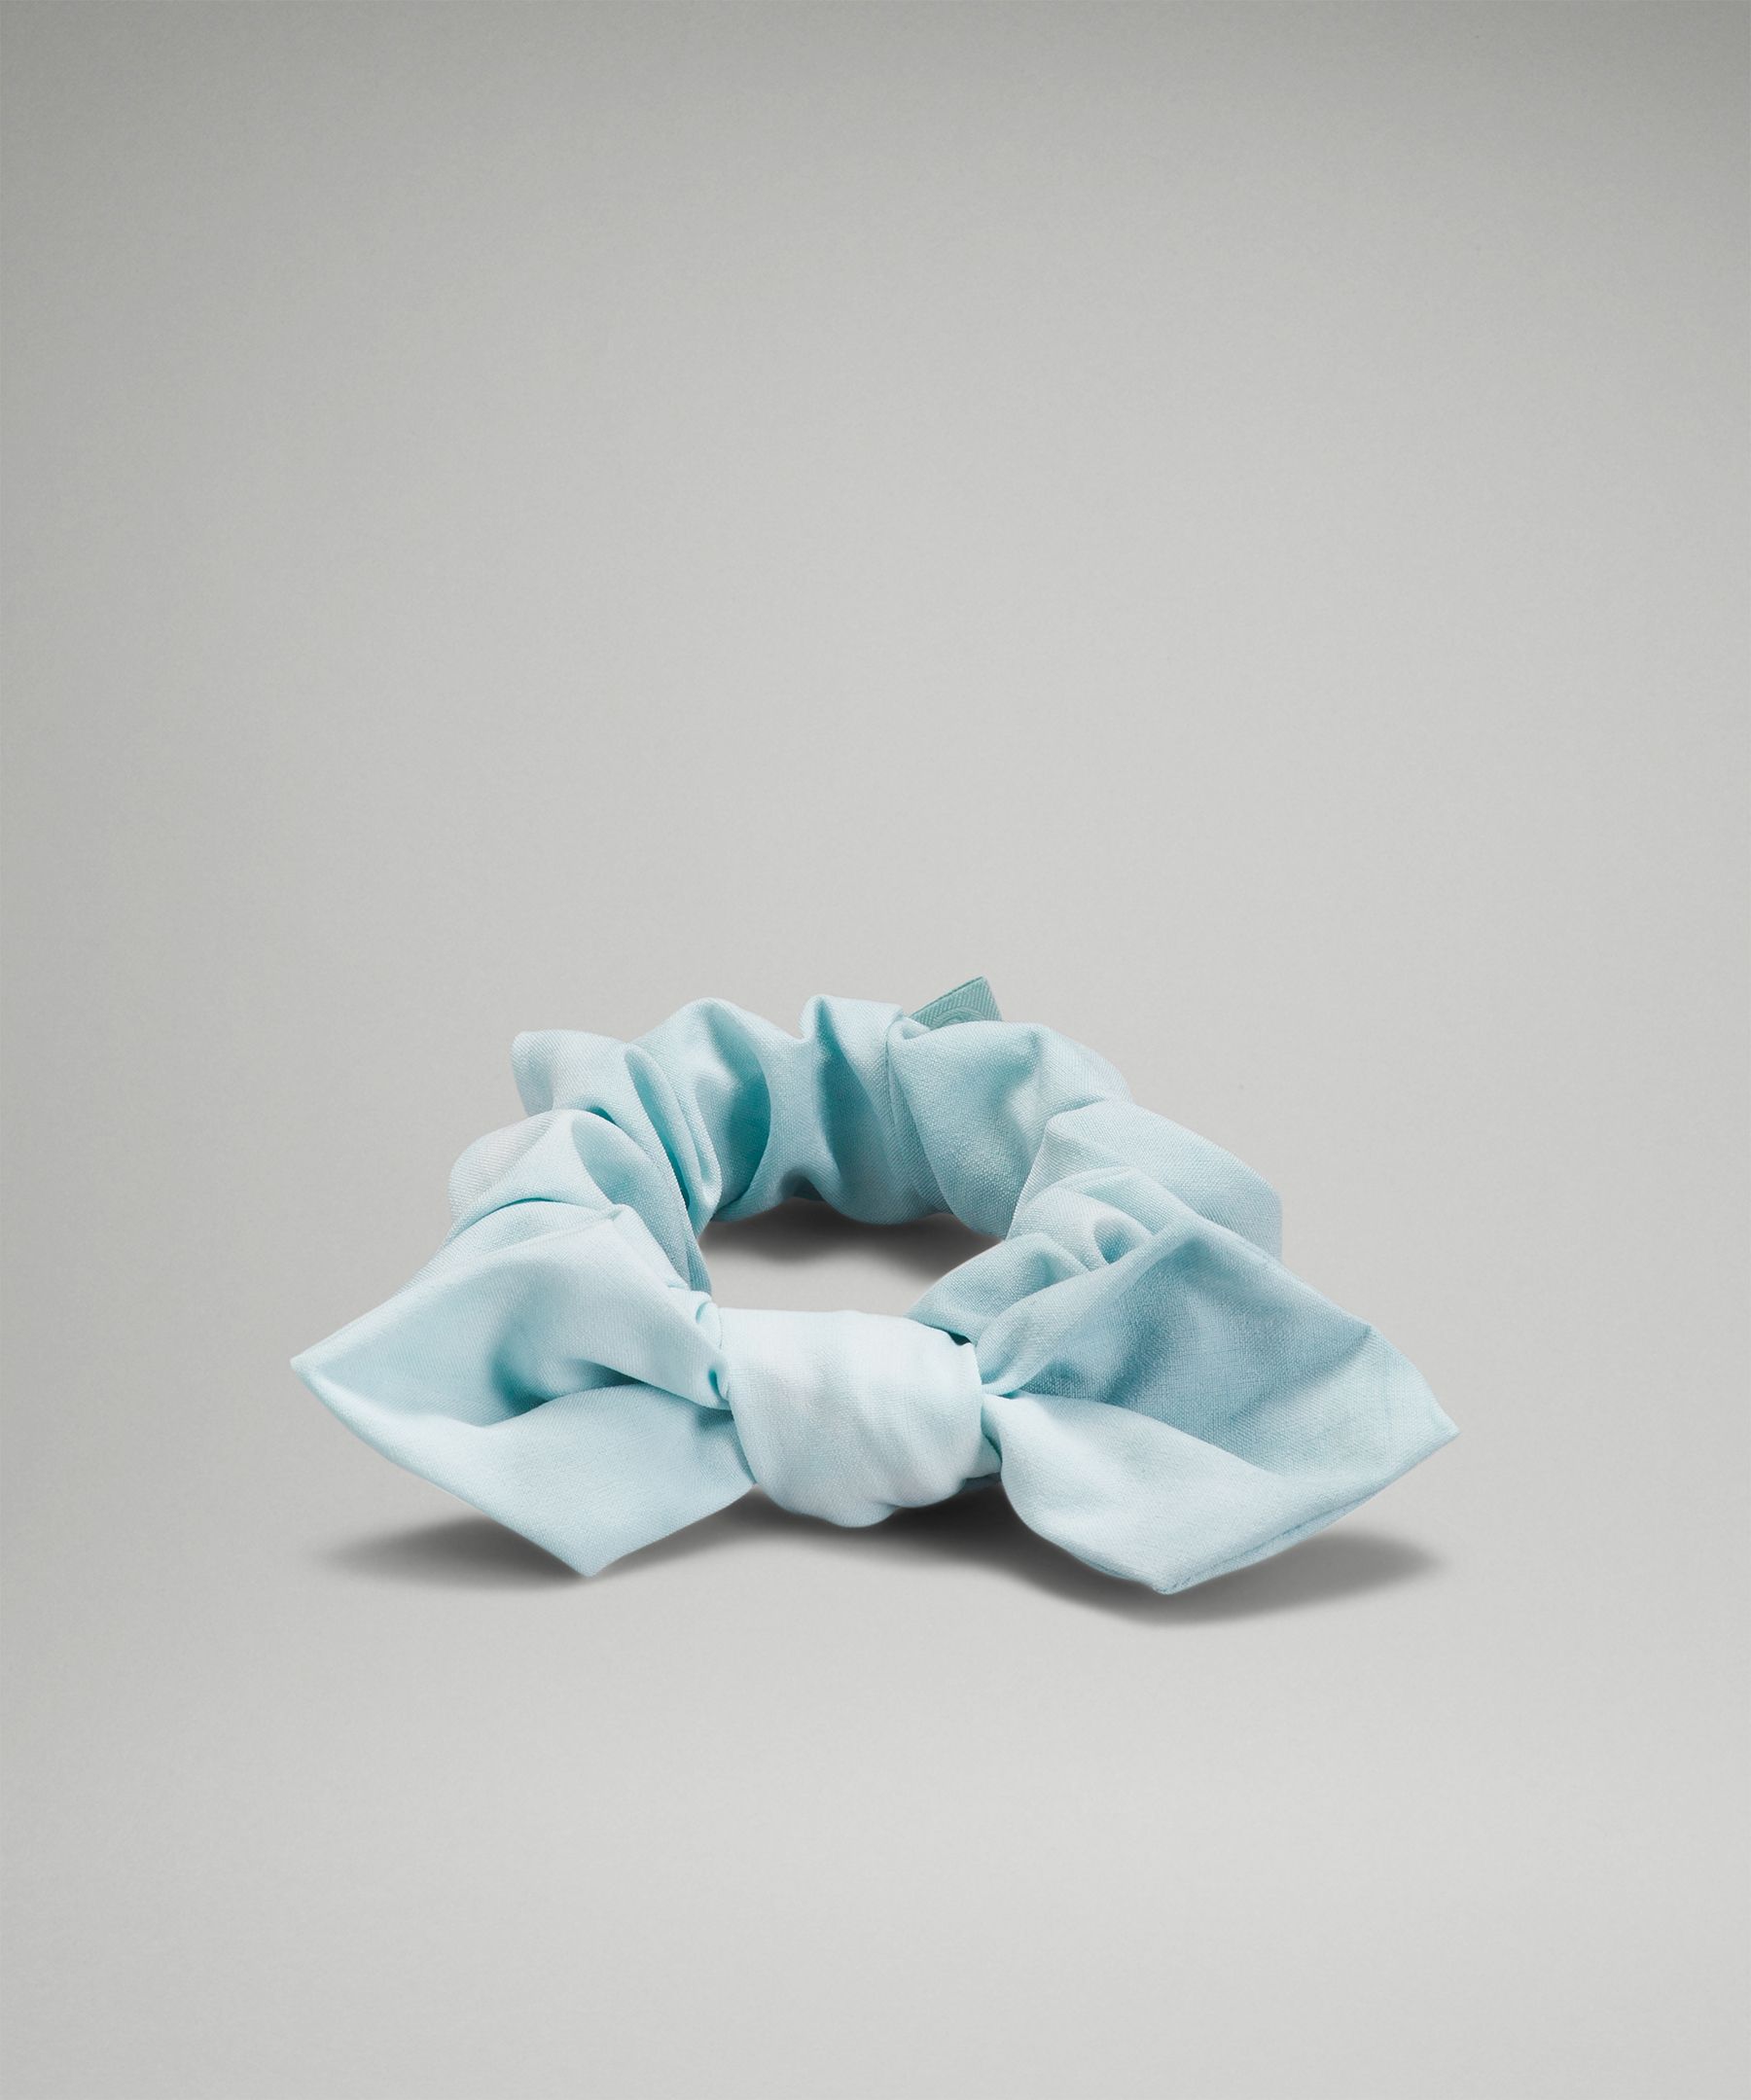 Lululemon Uplifting Bow Scrunchie In Diamond Dye White Sheer Blue Silver Blue